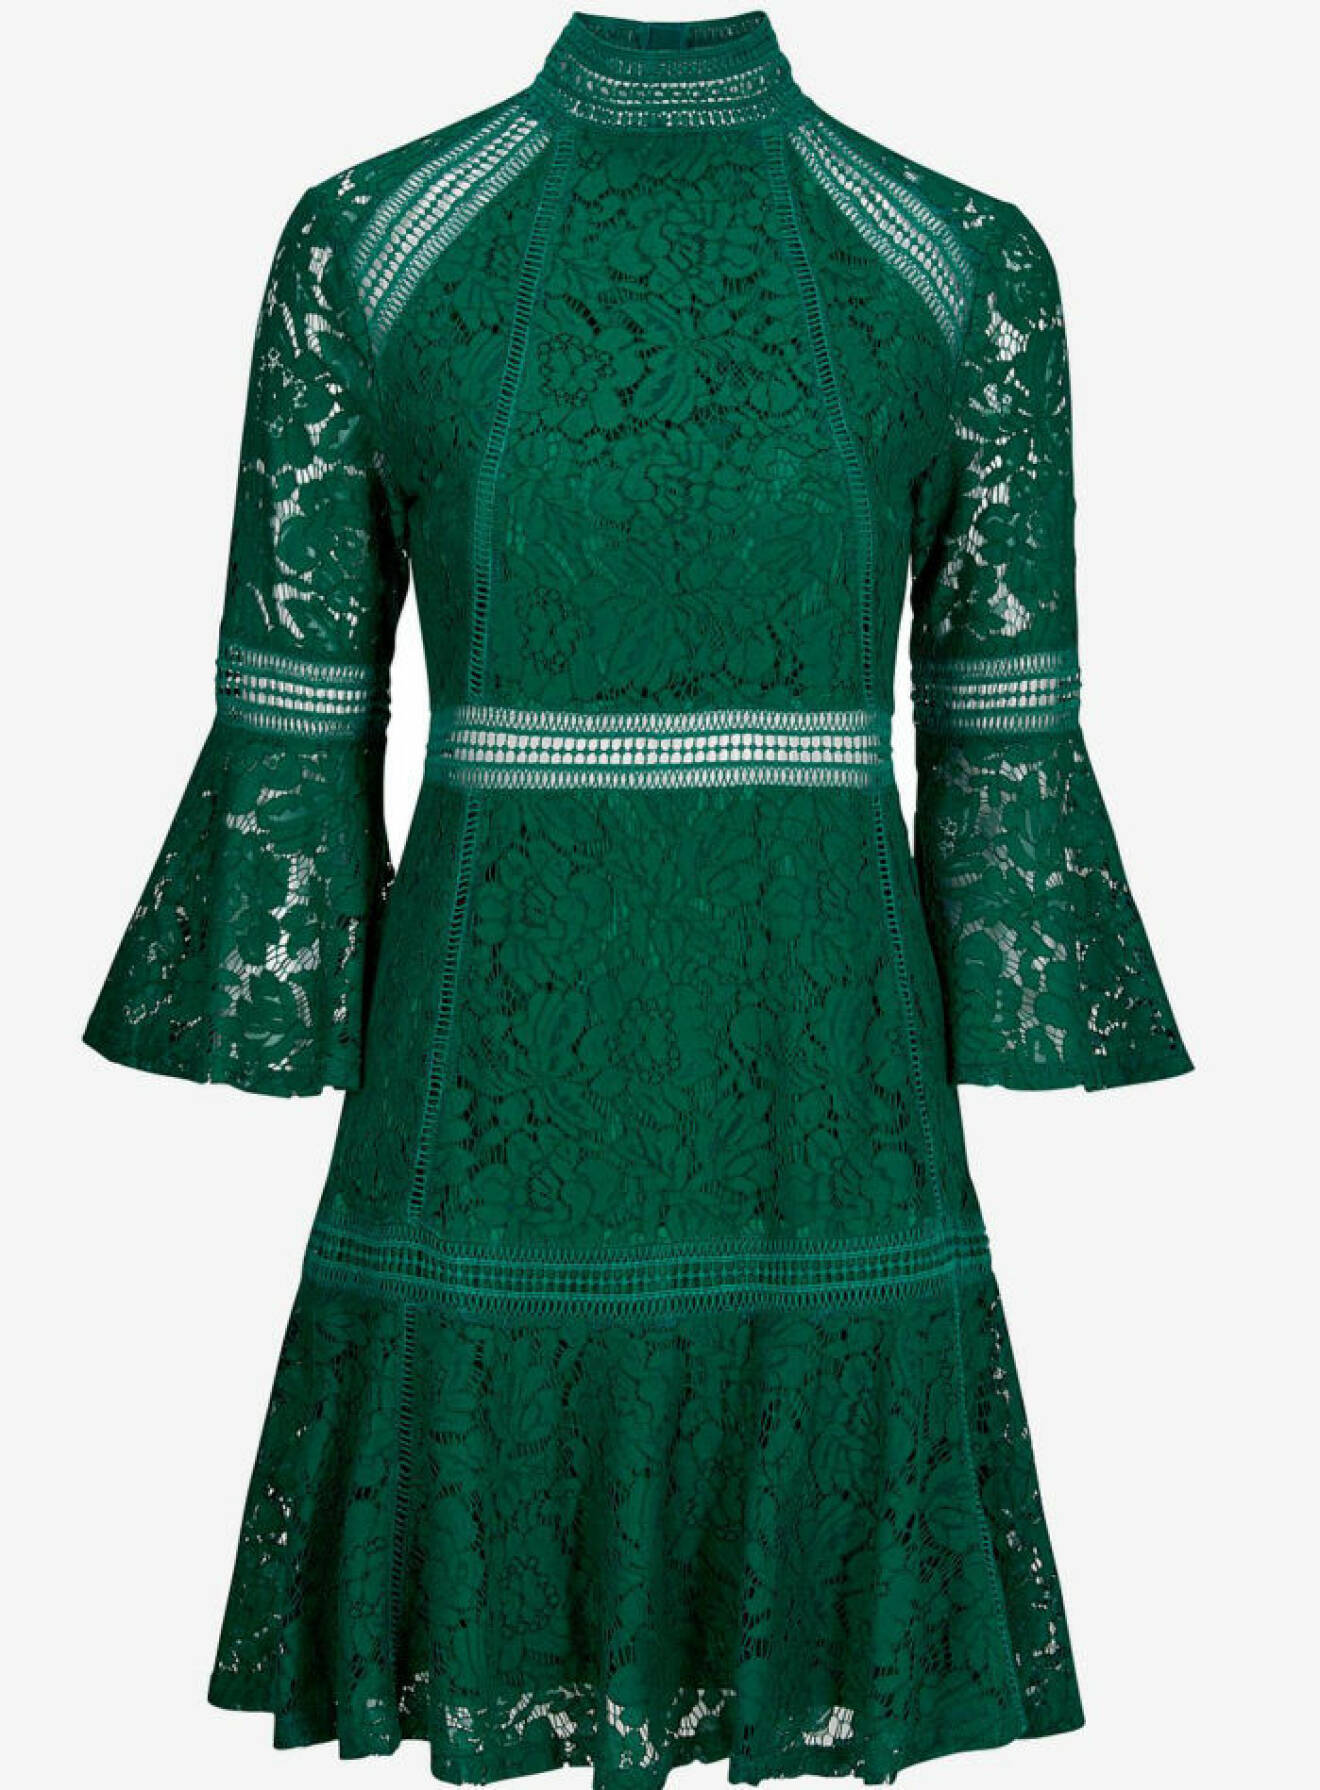 grön spetsklänning nyår 2017